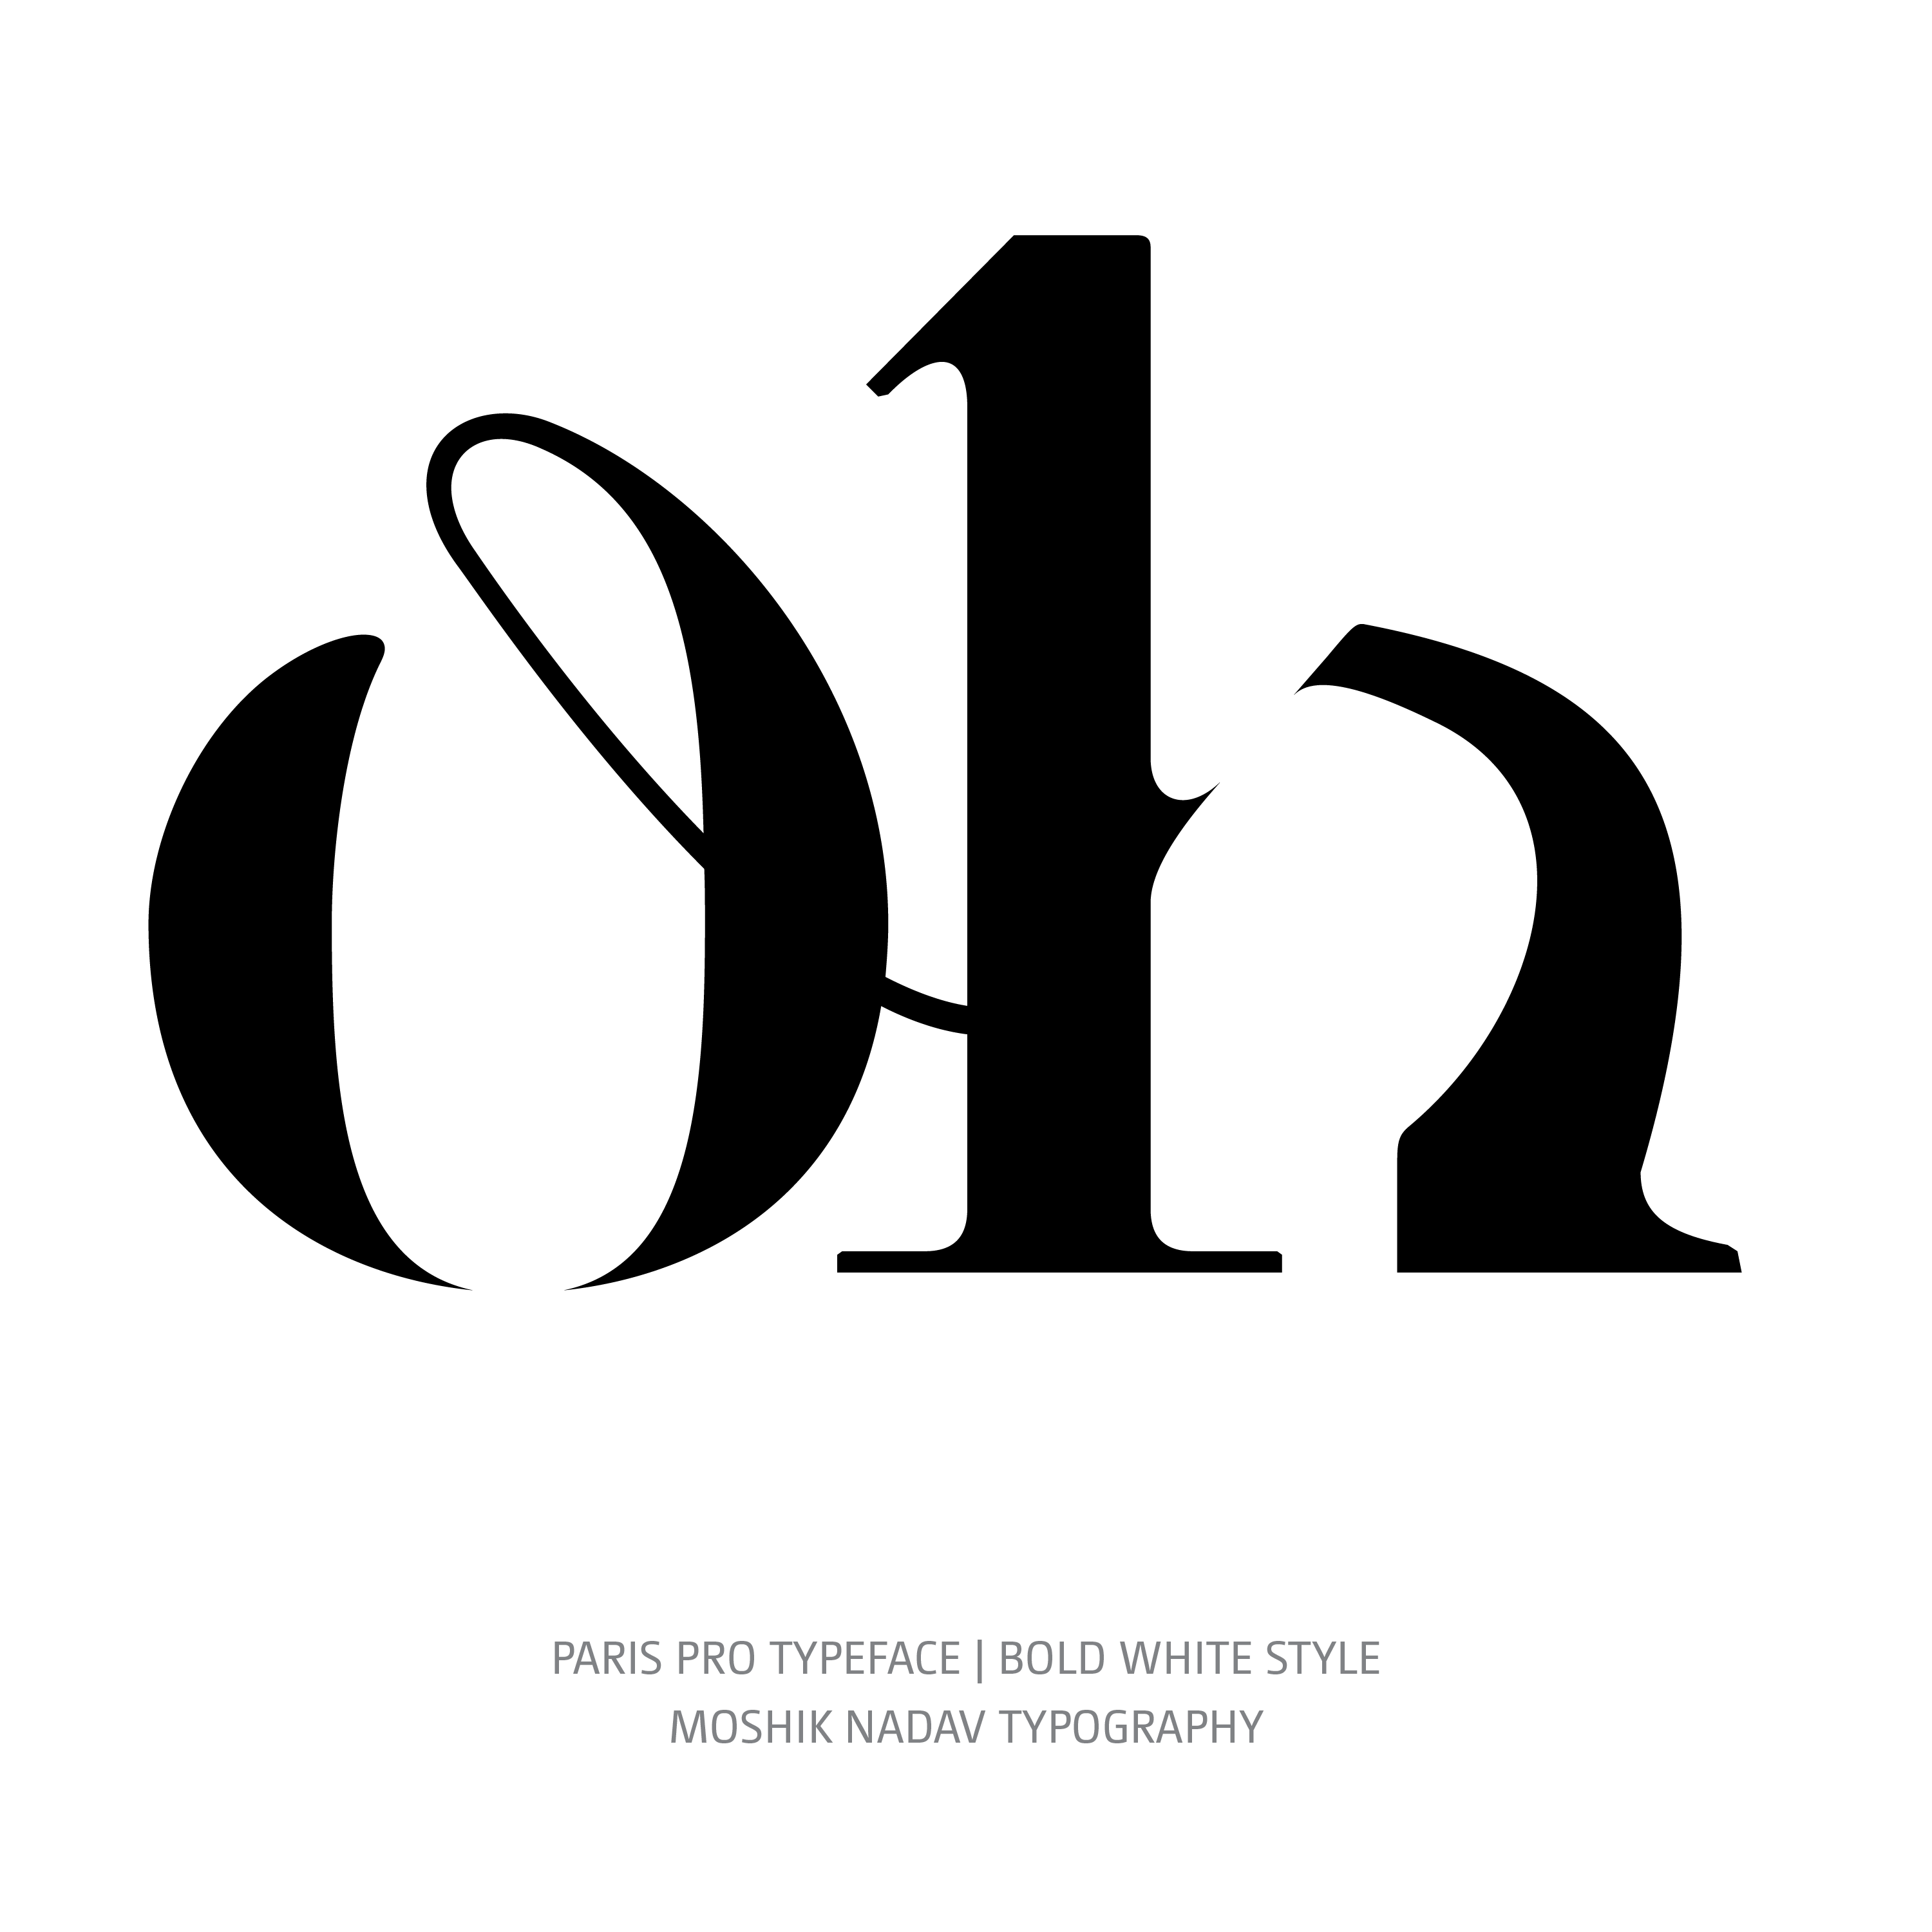 Paris Pro Typeface Bold White oh ligature